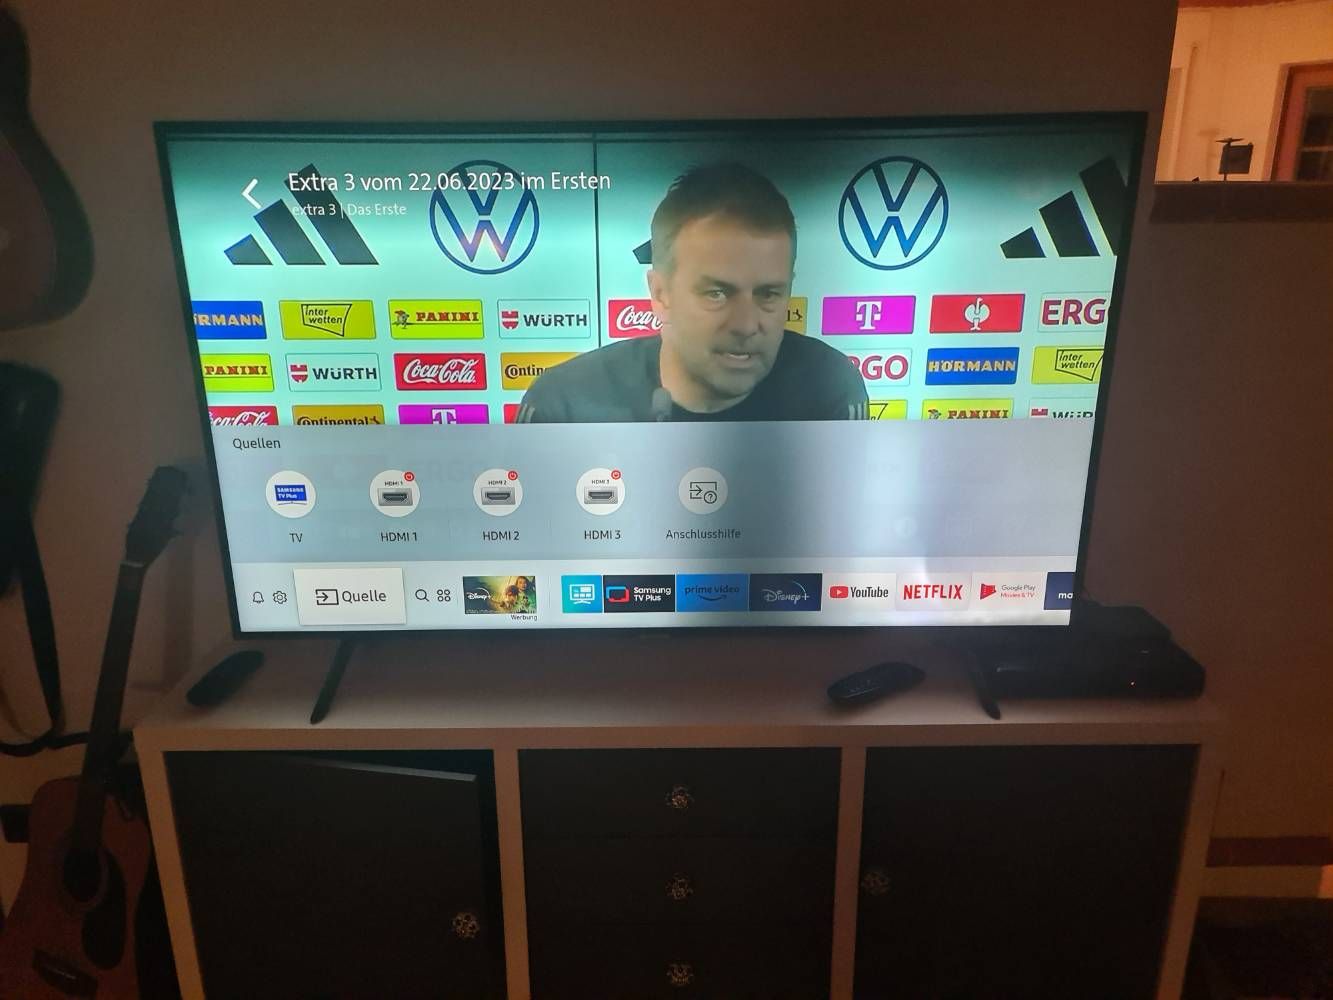 Unser Fernseher hat ein sehr seltsames Bildproblem. - Samsung Community